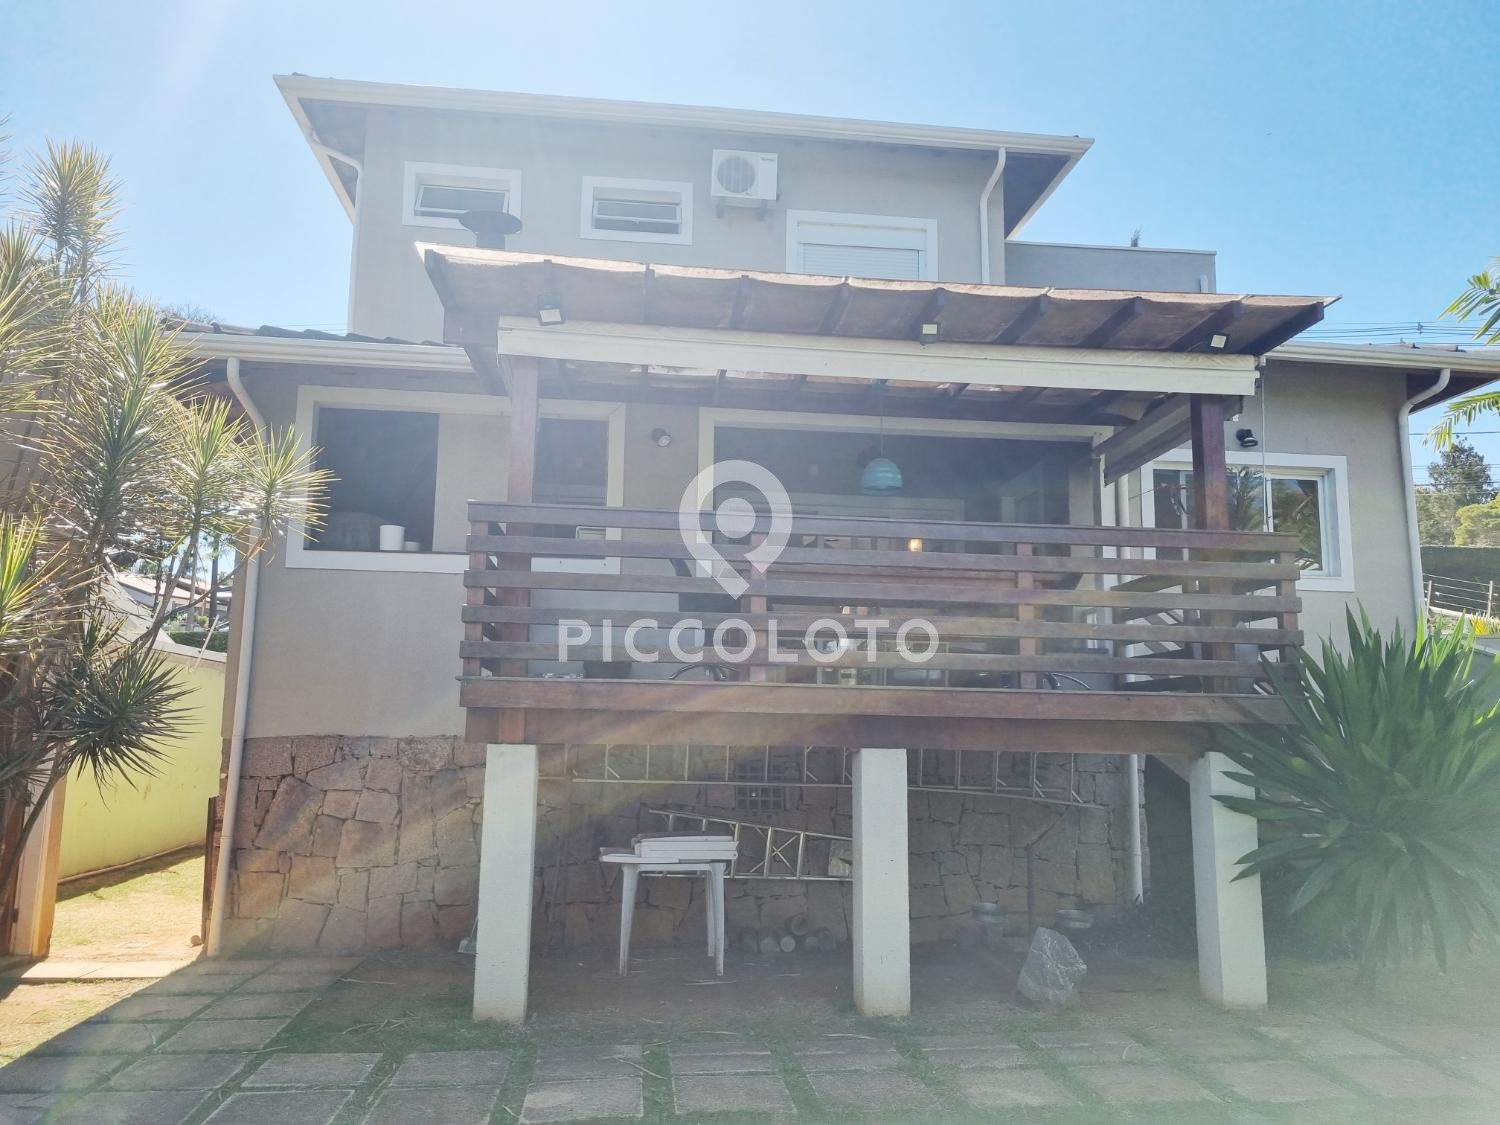 Piccoloto -Casa para alugar no Loteamento Caminhos de São Conrado (Sousas) em Campinas